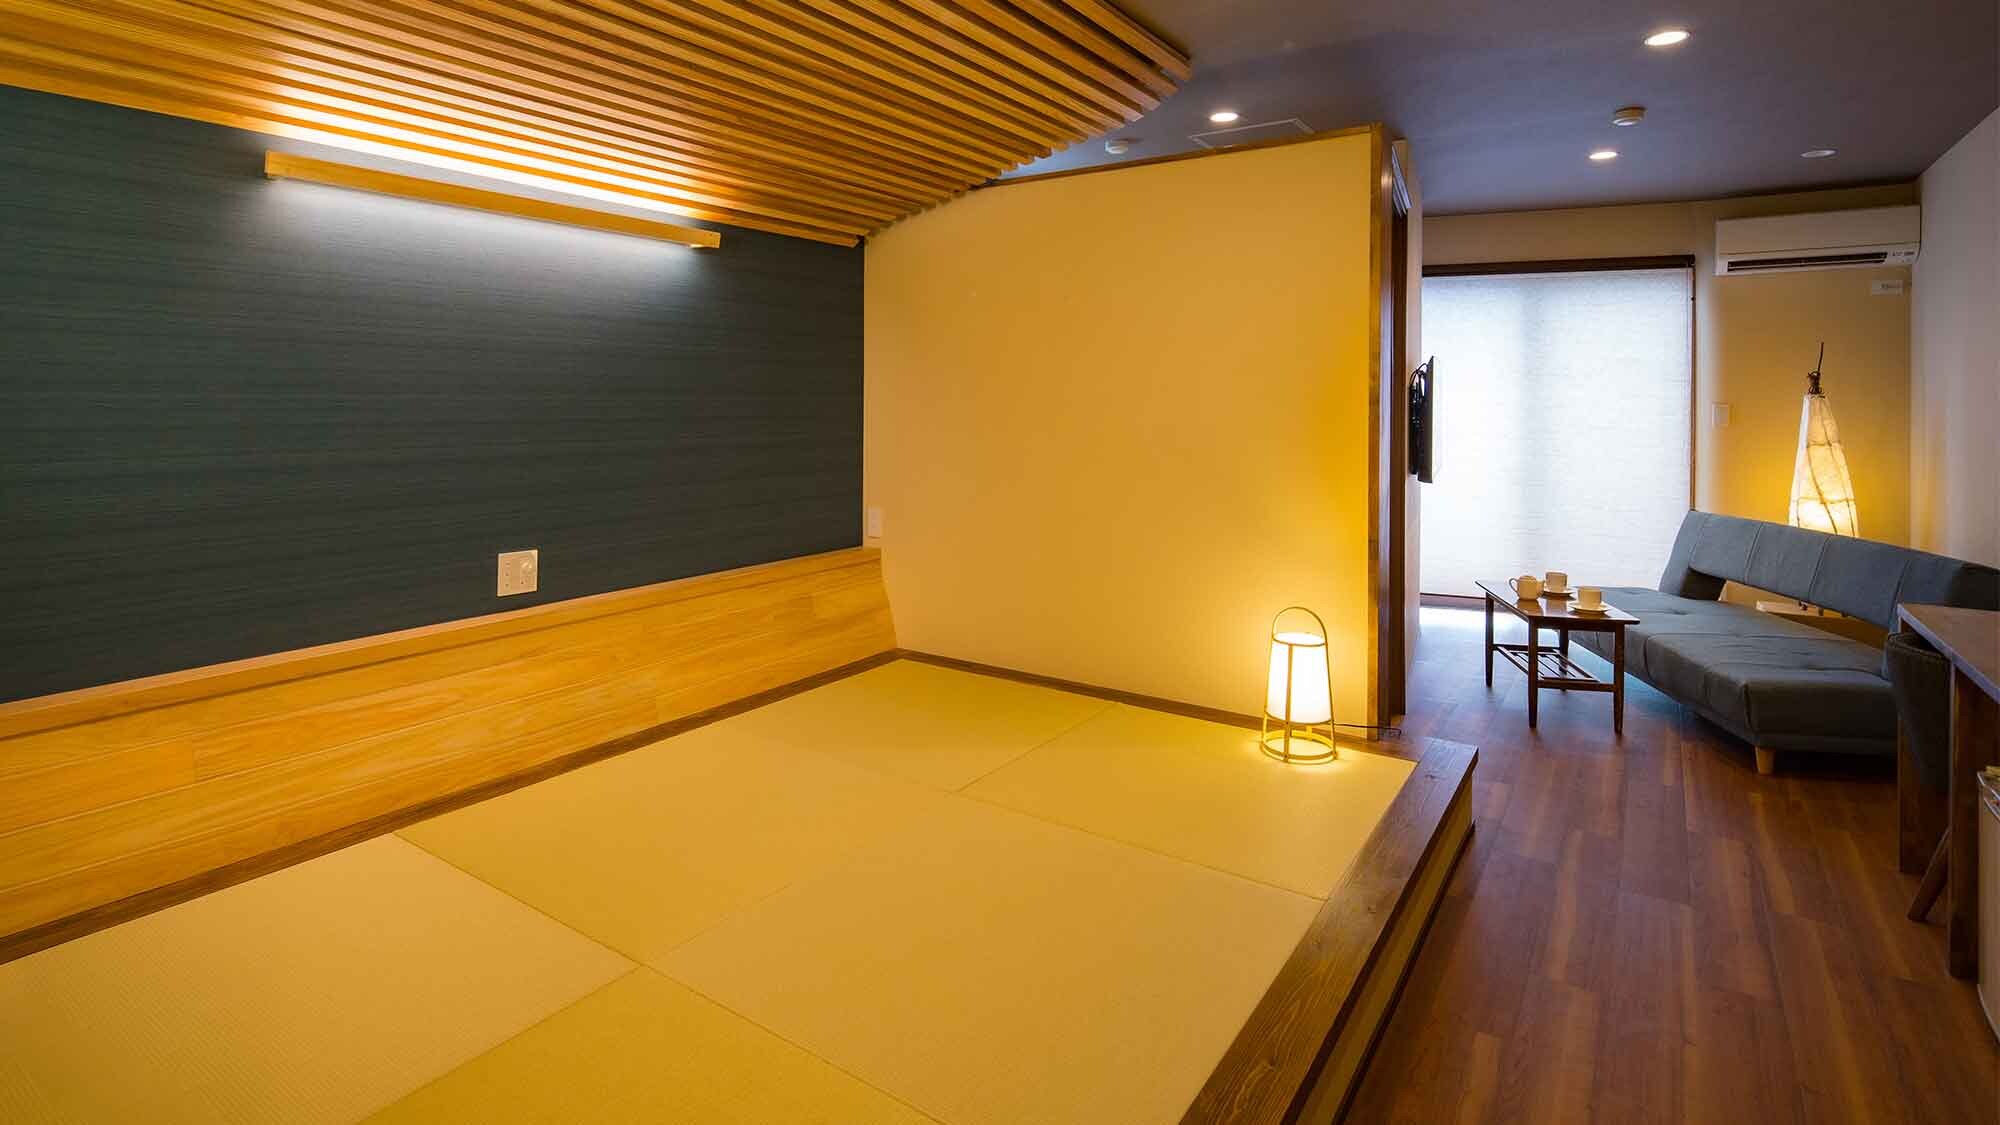 ・[ตัวอย่างห้องสไตล์ญี่ปุ่นพร้อมอ่างอาบน้ำพร้อมวิว] หากคุณนำฟูกนอนออกไป คุณสามารถใช้ฟูกญี่ปุ่นเป็นพื้นที่เสื่อทาทามิ